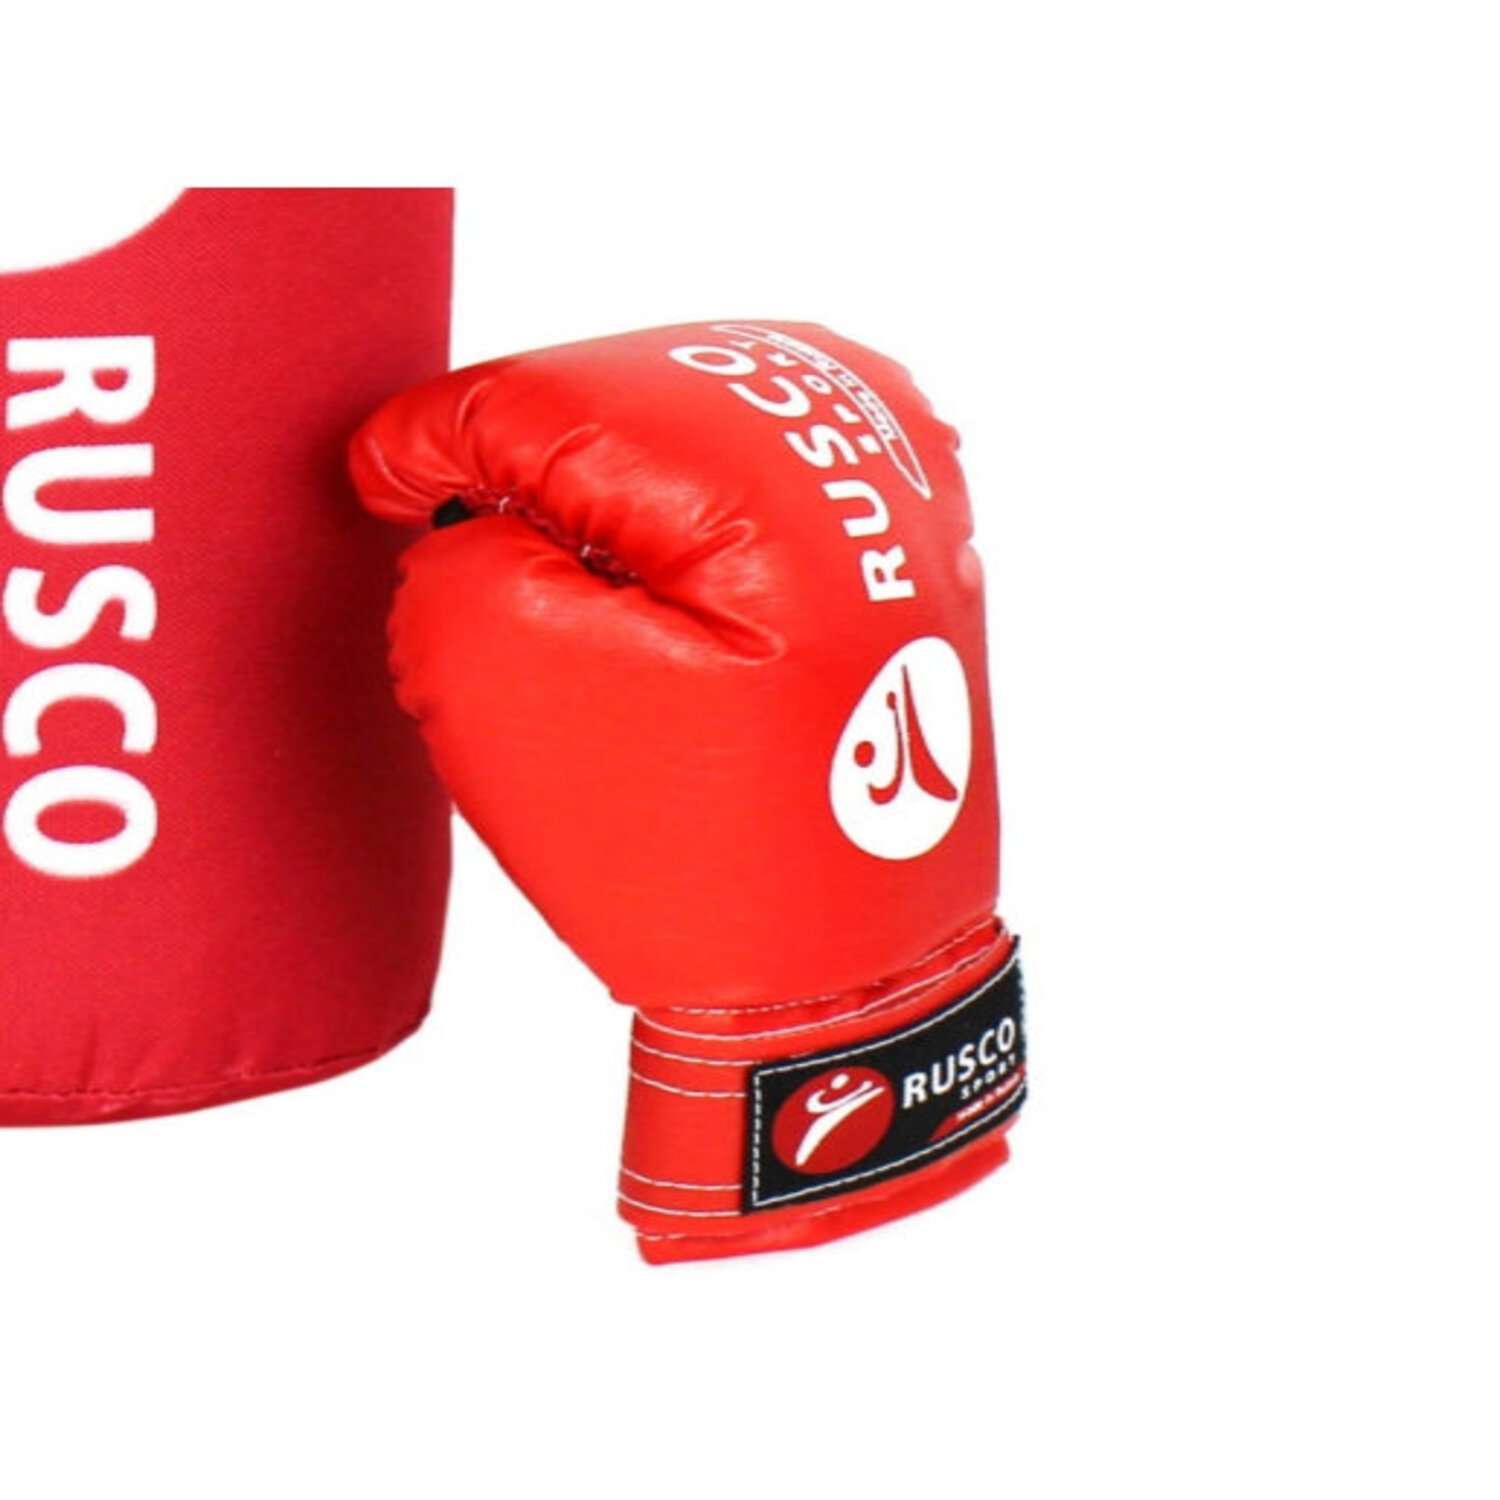 Набор для бокса RuscoSport красный 4OZ - фото 3